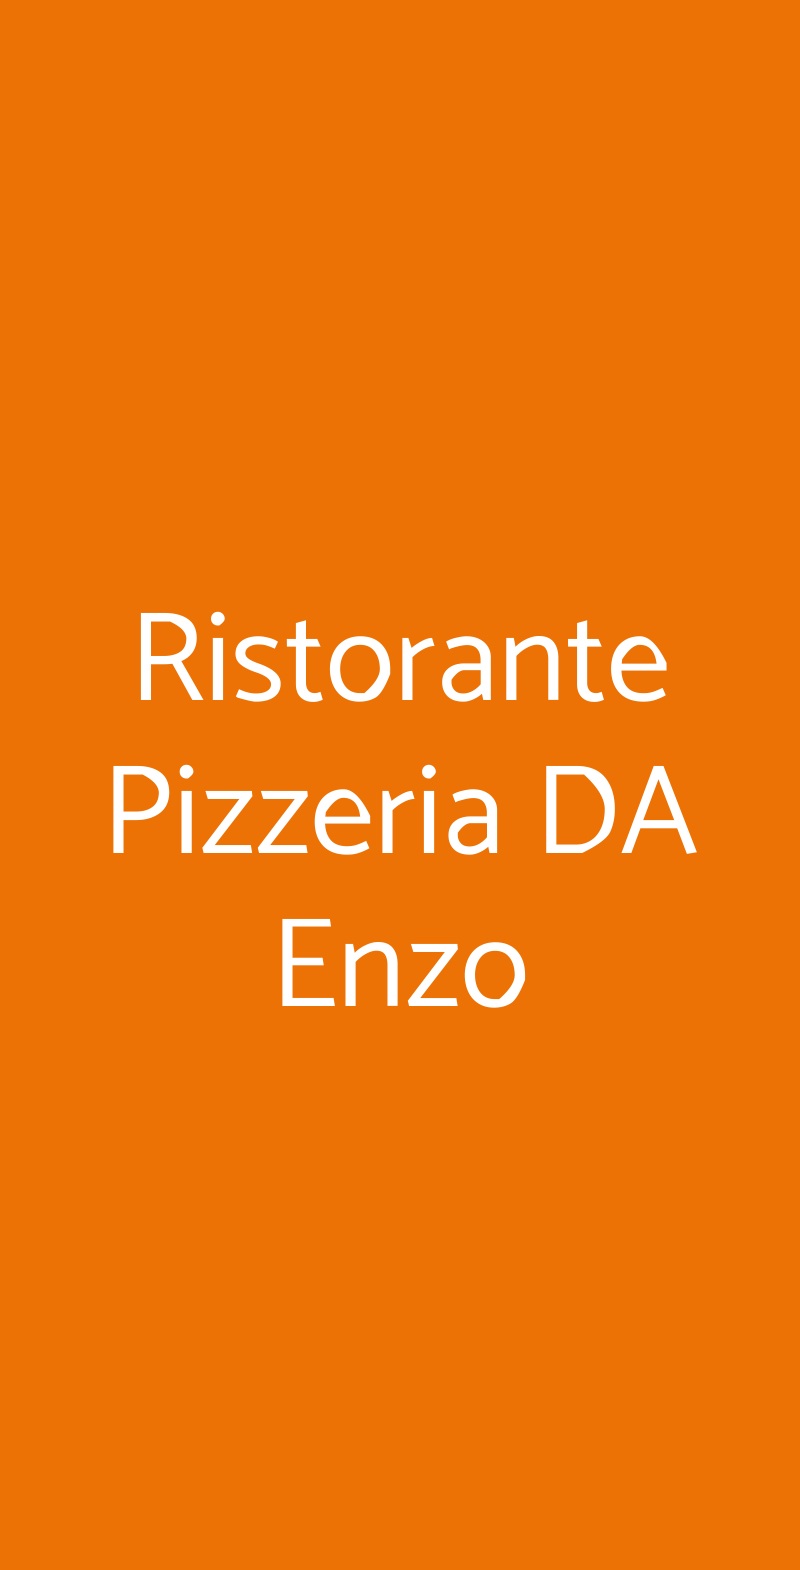 Ristorante Pizzeria DA Enzo Varese menù 1 pagina